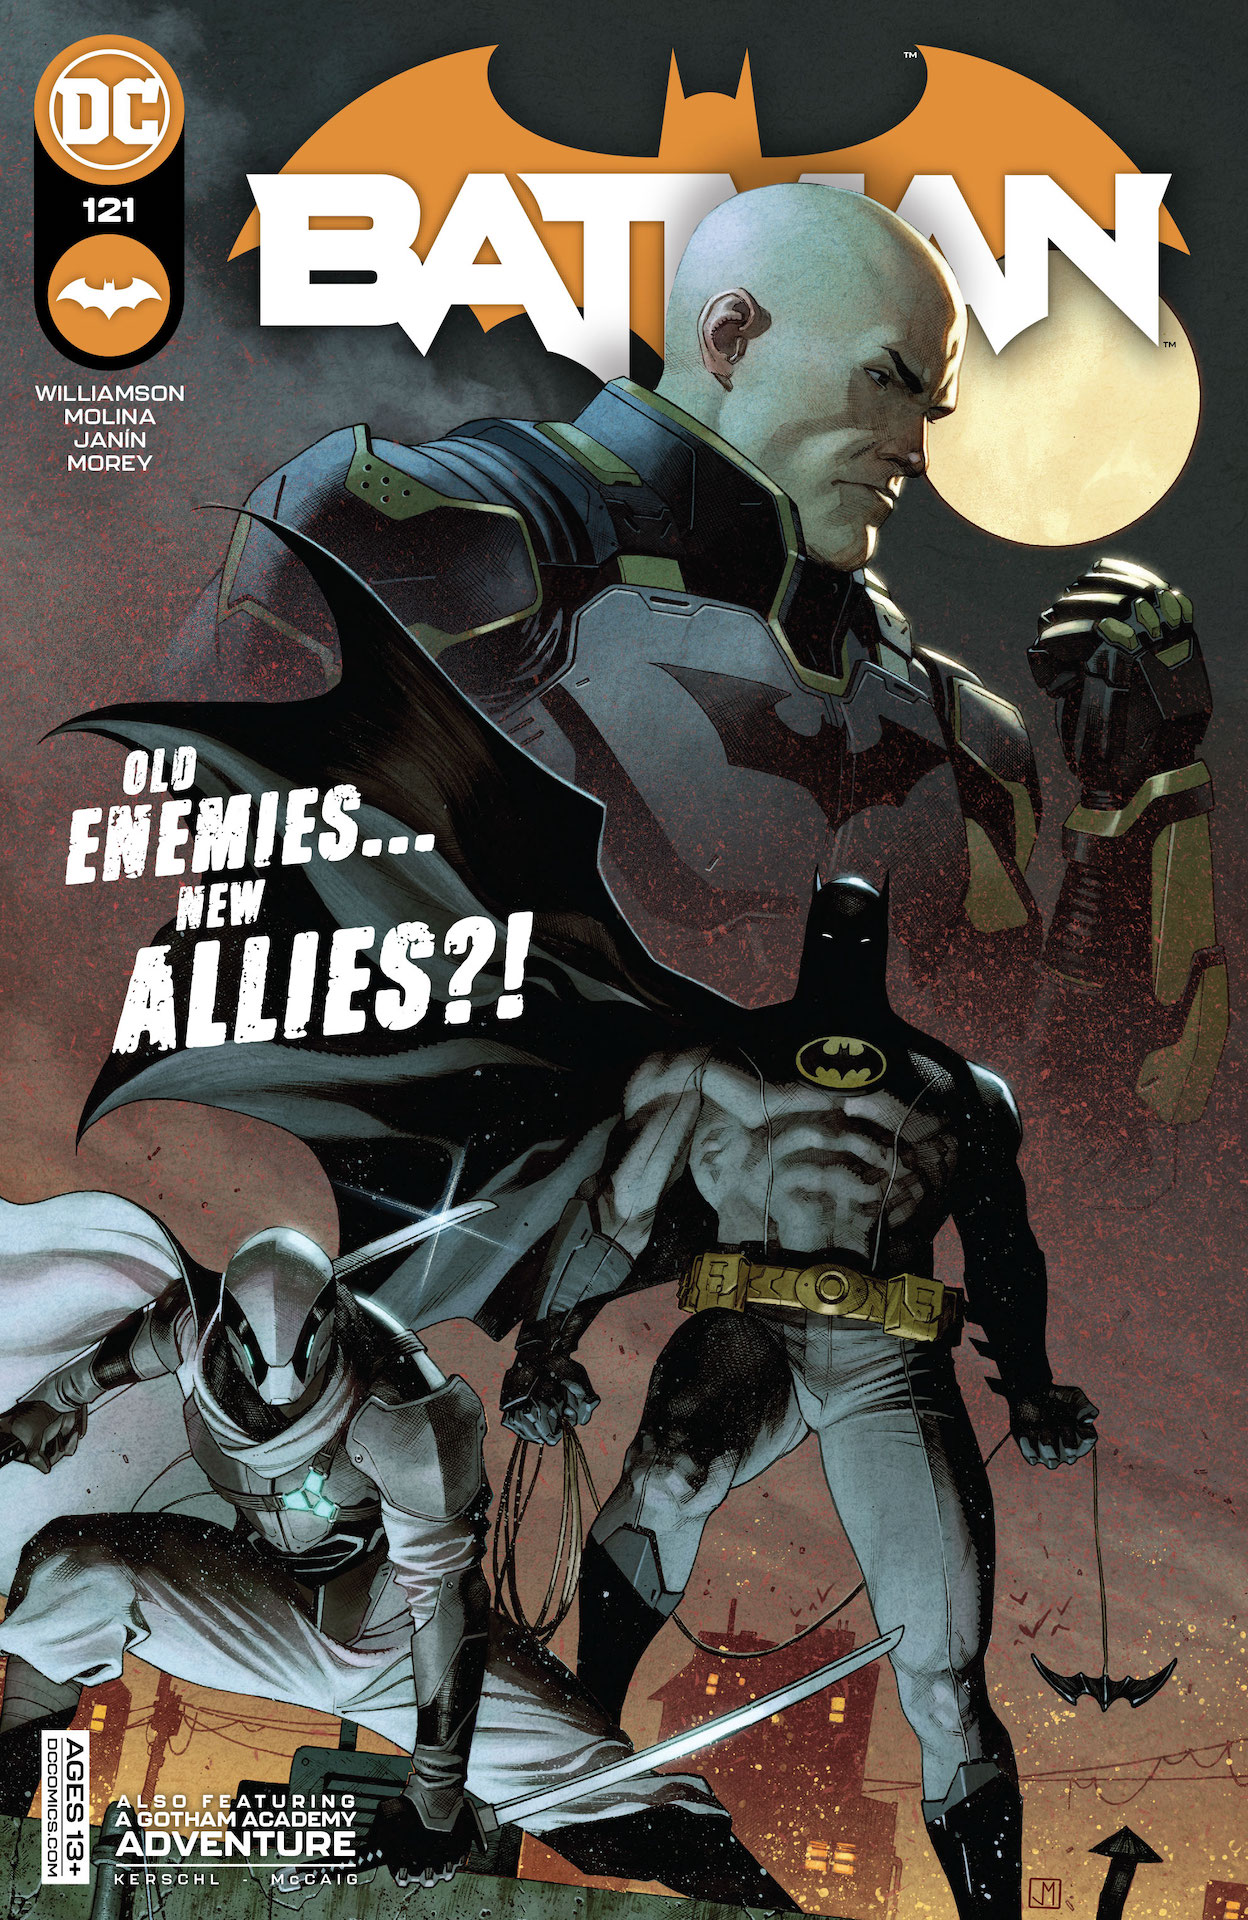 DC Preview: Batman #121